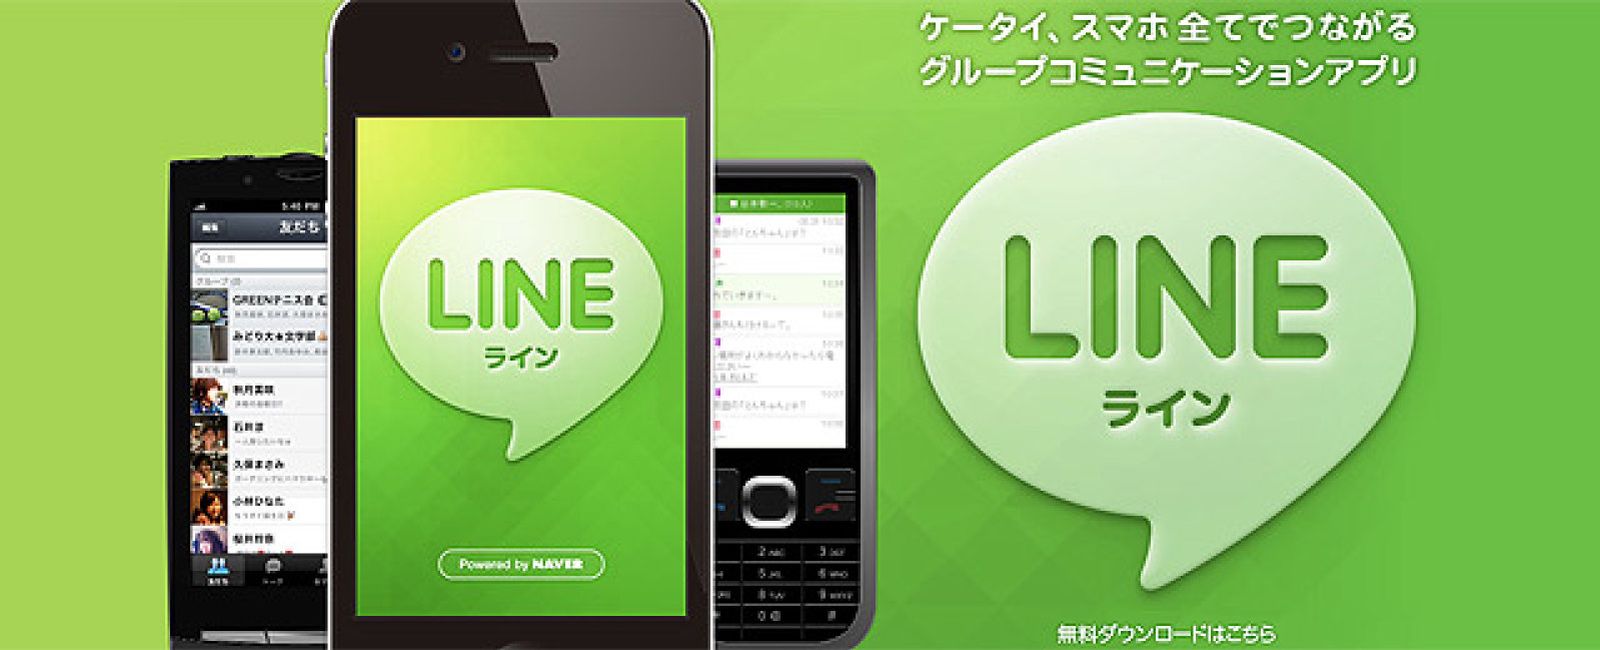 Foto: La sombra de la japonesa LINE se cierne sobre WhatsApp